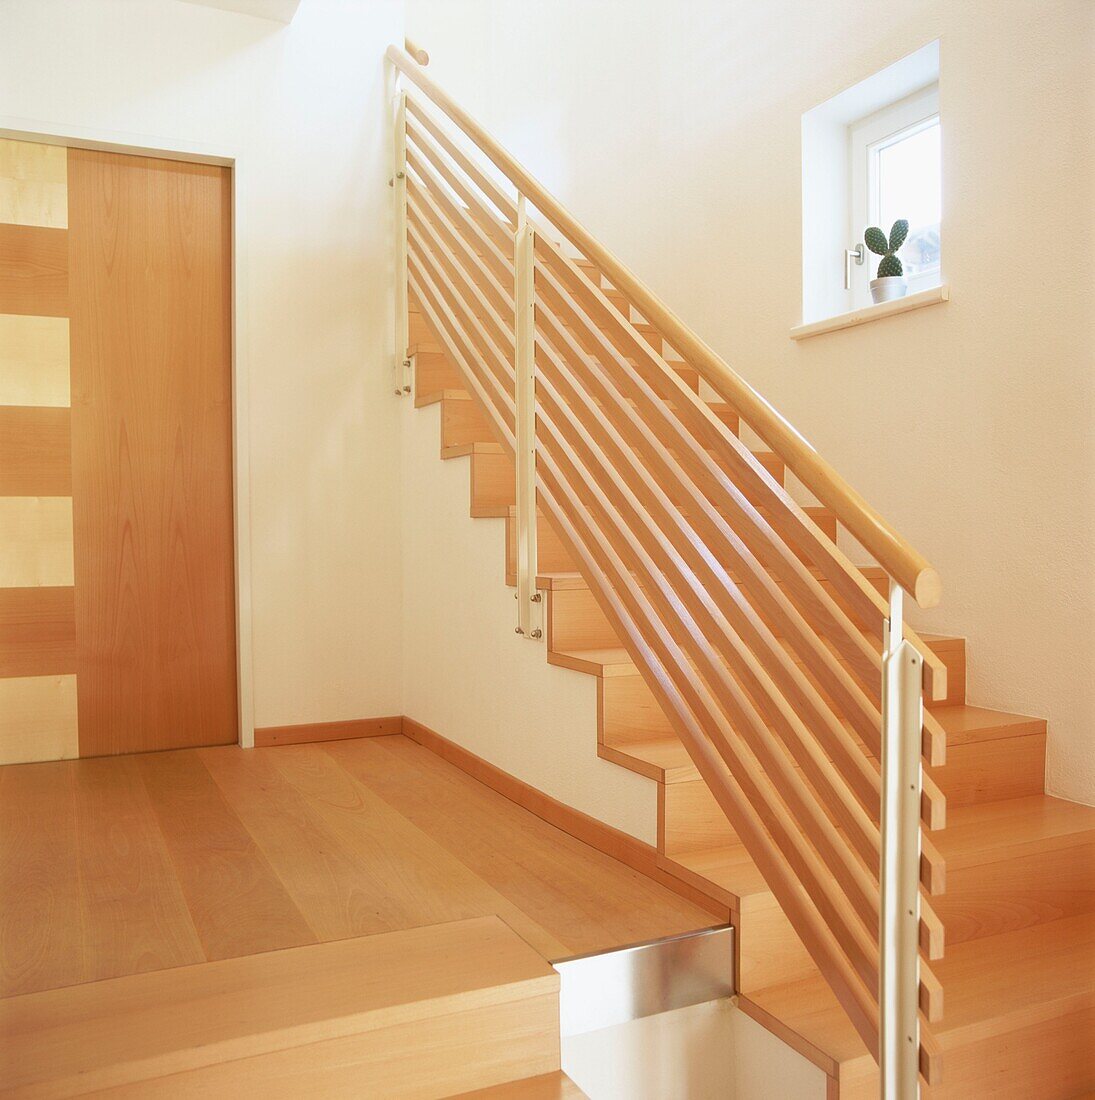 Zeitgenössische Eingangshalle, Treppe und Treppenabsatz mit Holzböden und Stufen